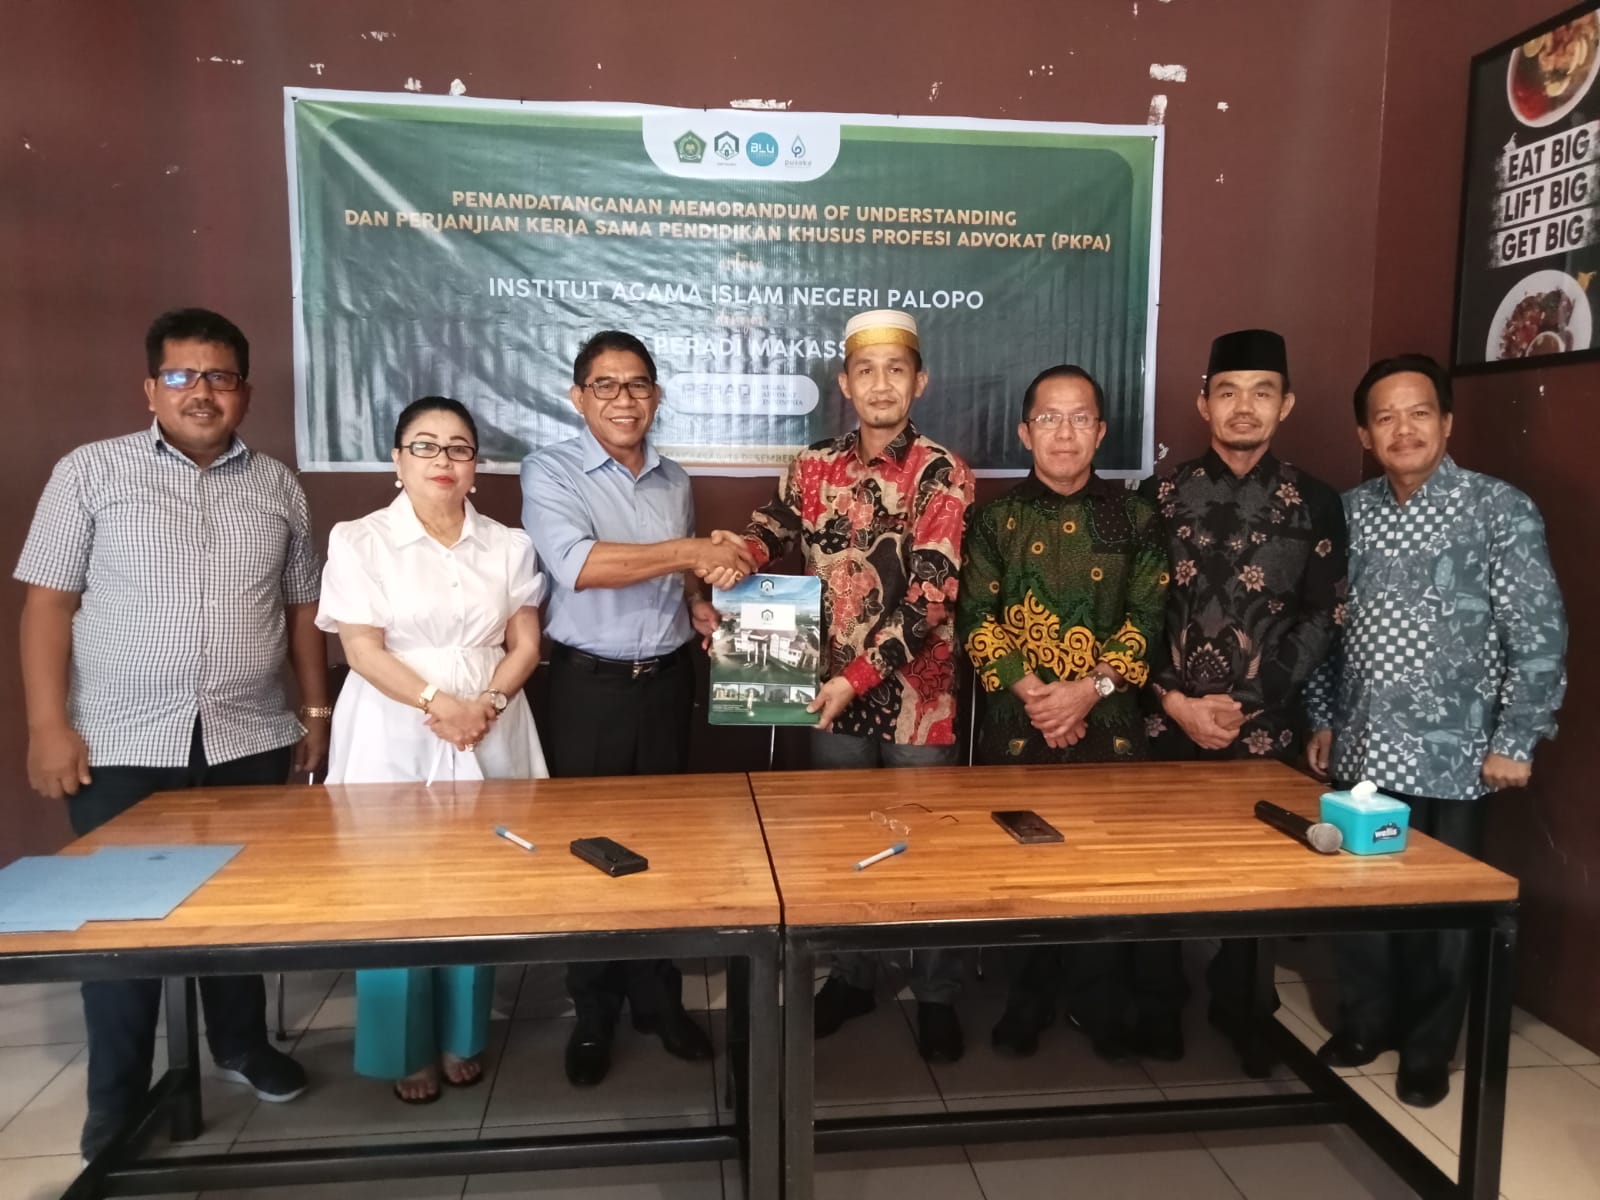 DPC PERADI SAI Makassar telah melakukan penandatanganan MoU kerjasama PKPA dengan (IAIN) Institut Agama Islam Negeri, Palopo yang dilaksanakan pada 14 Desember 2023, di Kampoeng Kuliner Jl. A. P. Pettarani Makassar.